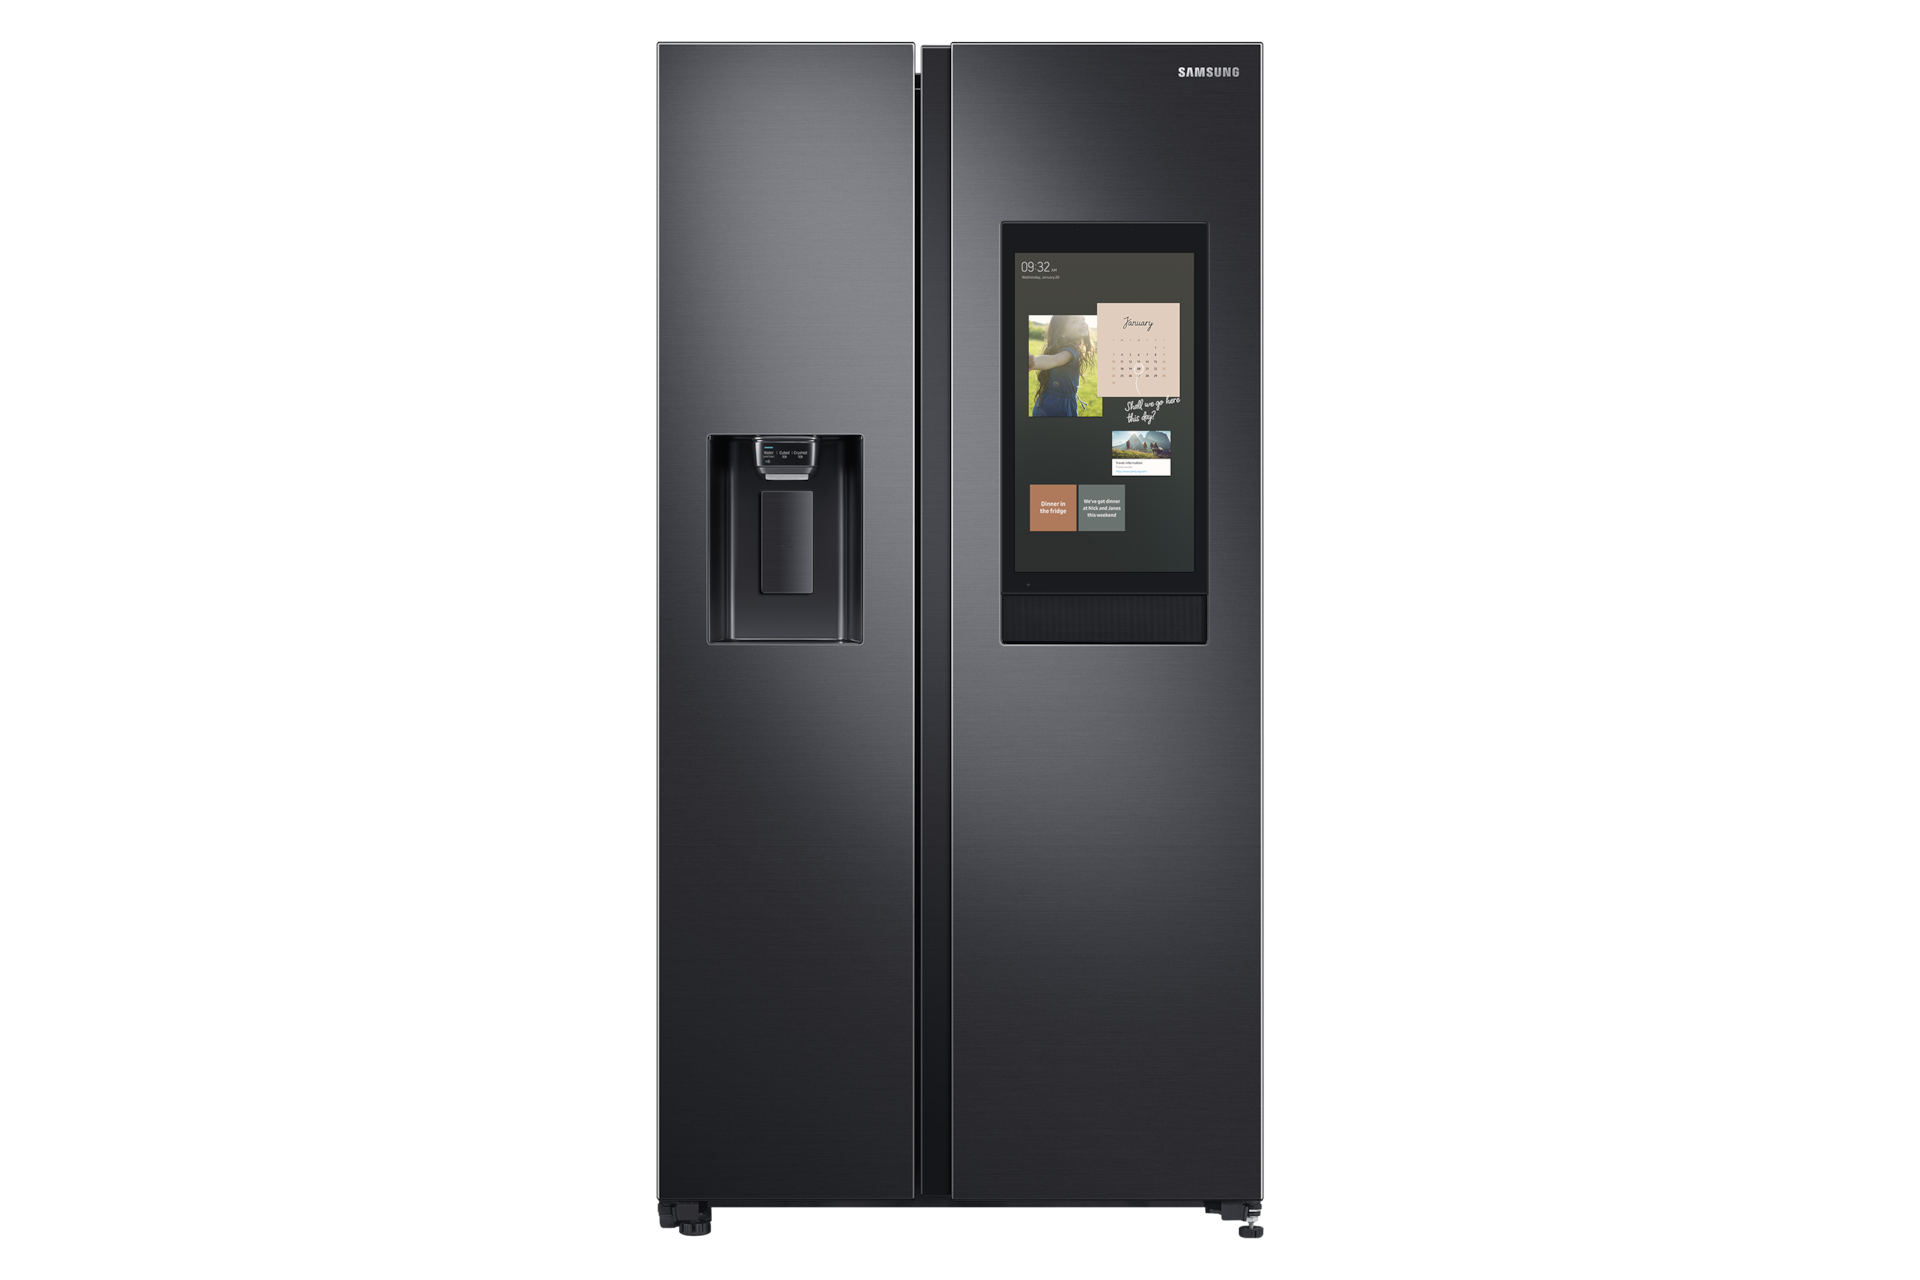 Tủ lạnh Samsung Side by Side Family Hub 641L (đen) RS64T5F01B4 nhìn từ phía trước. Thiết kế 2 cửa thời trang, ngăn nước ngoài, màn hình tương tác thông minh